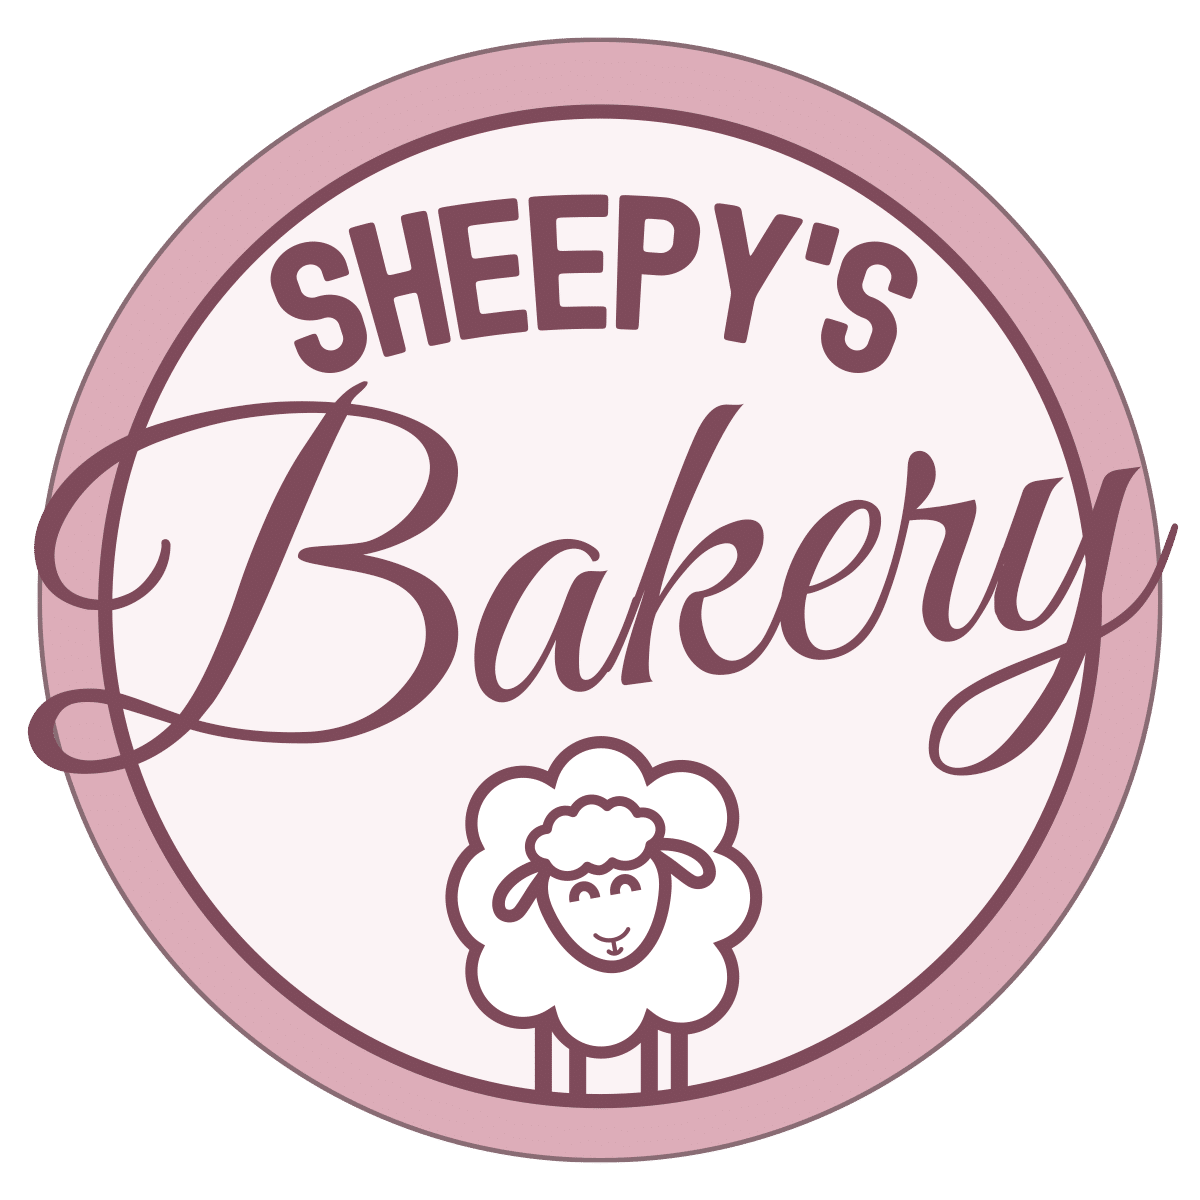 Sheepysbakery